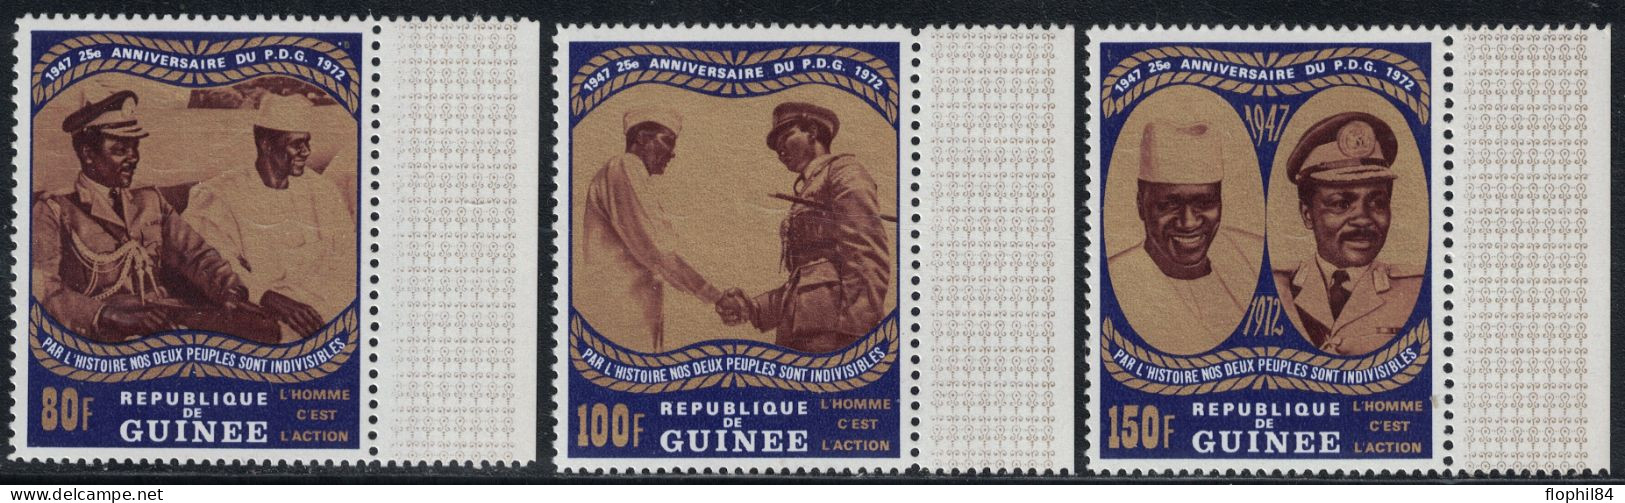 GUINEE REPUBLIQUE - NON EMIS - N°483A à 485A - SERIE DE 3 VALEURS NEUVES BORD DE FEUILLE - SANS TRACE DE CHARNIERE. - Guinée (1958-...)